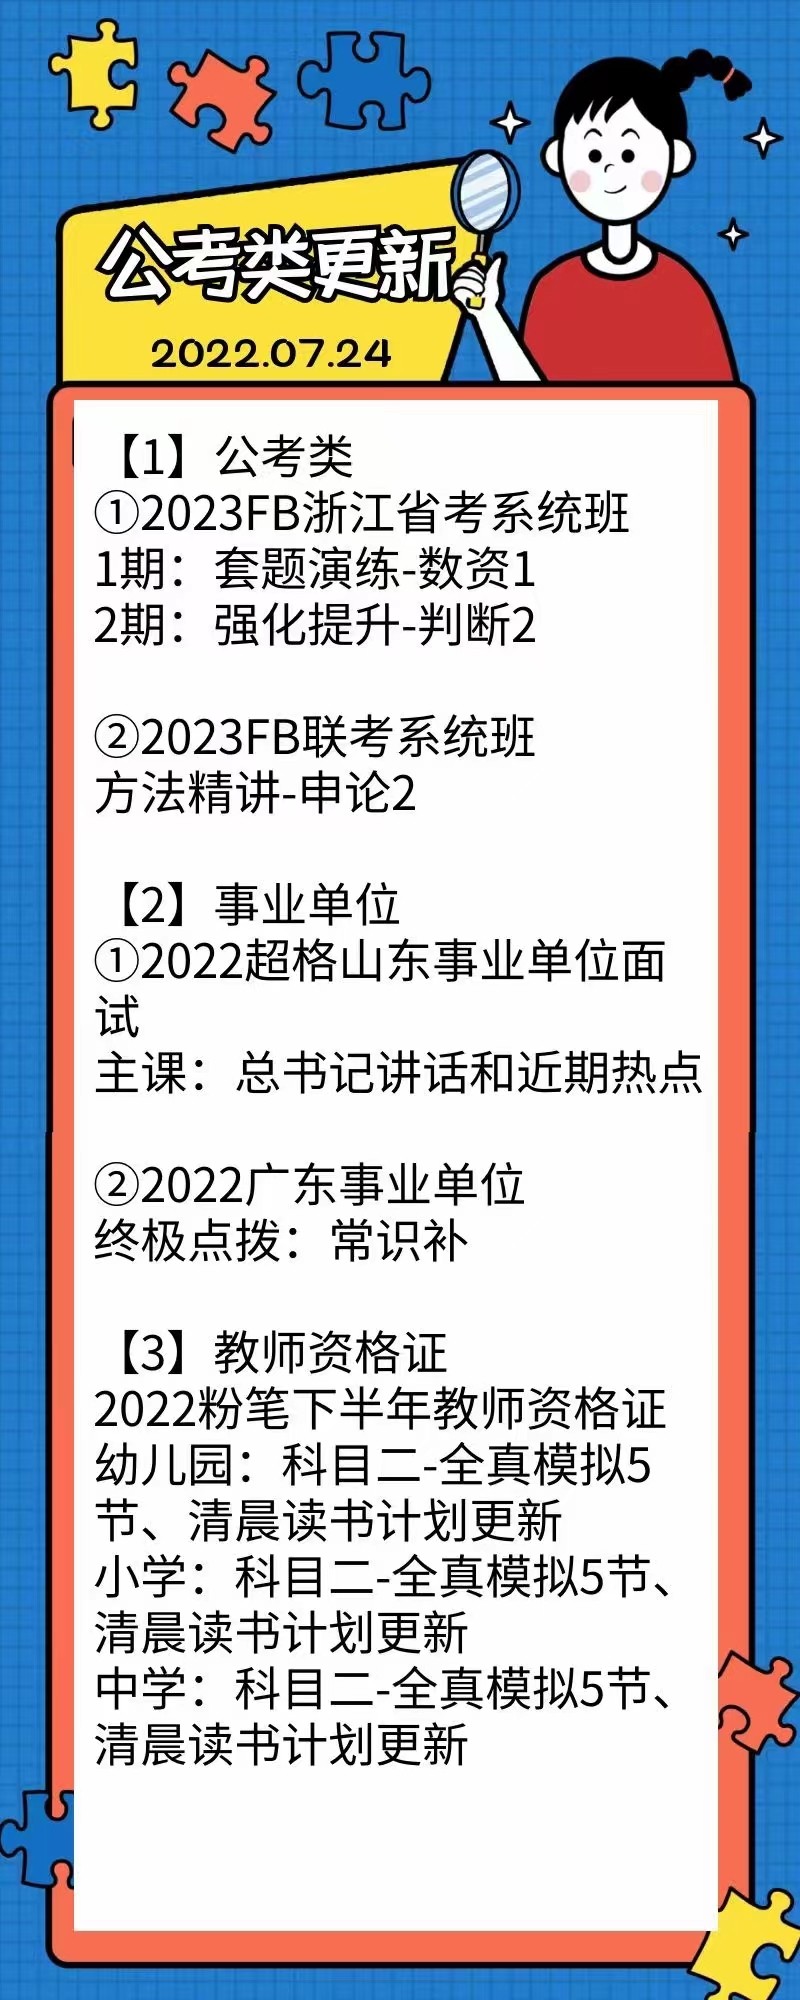 萌学院区07月24号更新 公务员 事业单位2022 教师招聘